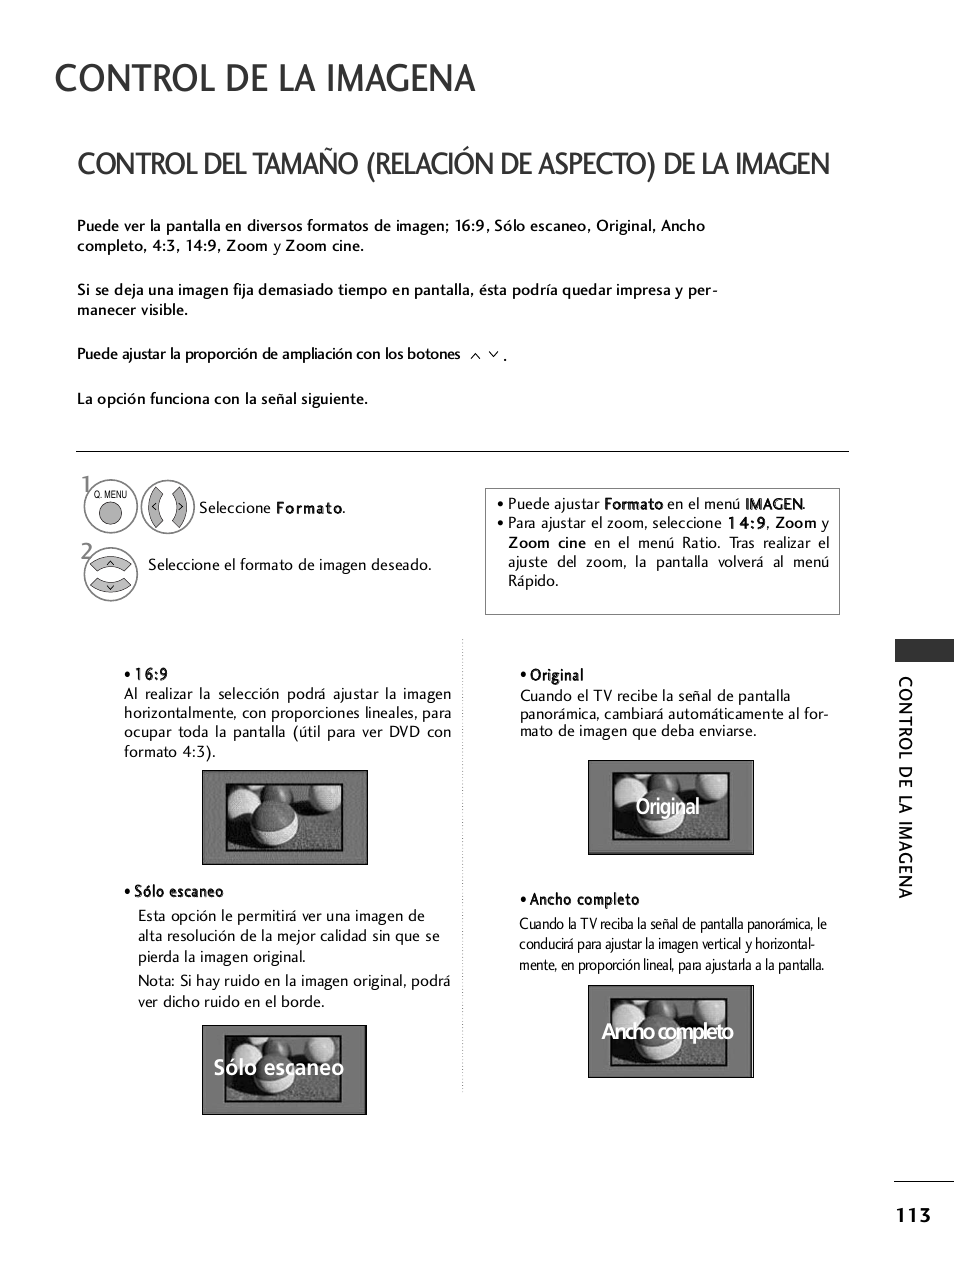 Control de la imagena, Sólo escaneo, Original ancho completo | LG 32LH40 Manual del usuario | Página 115 / 180